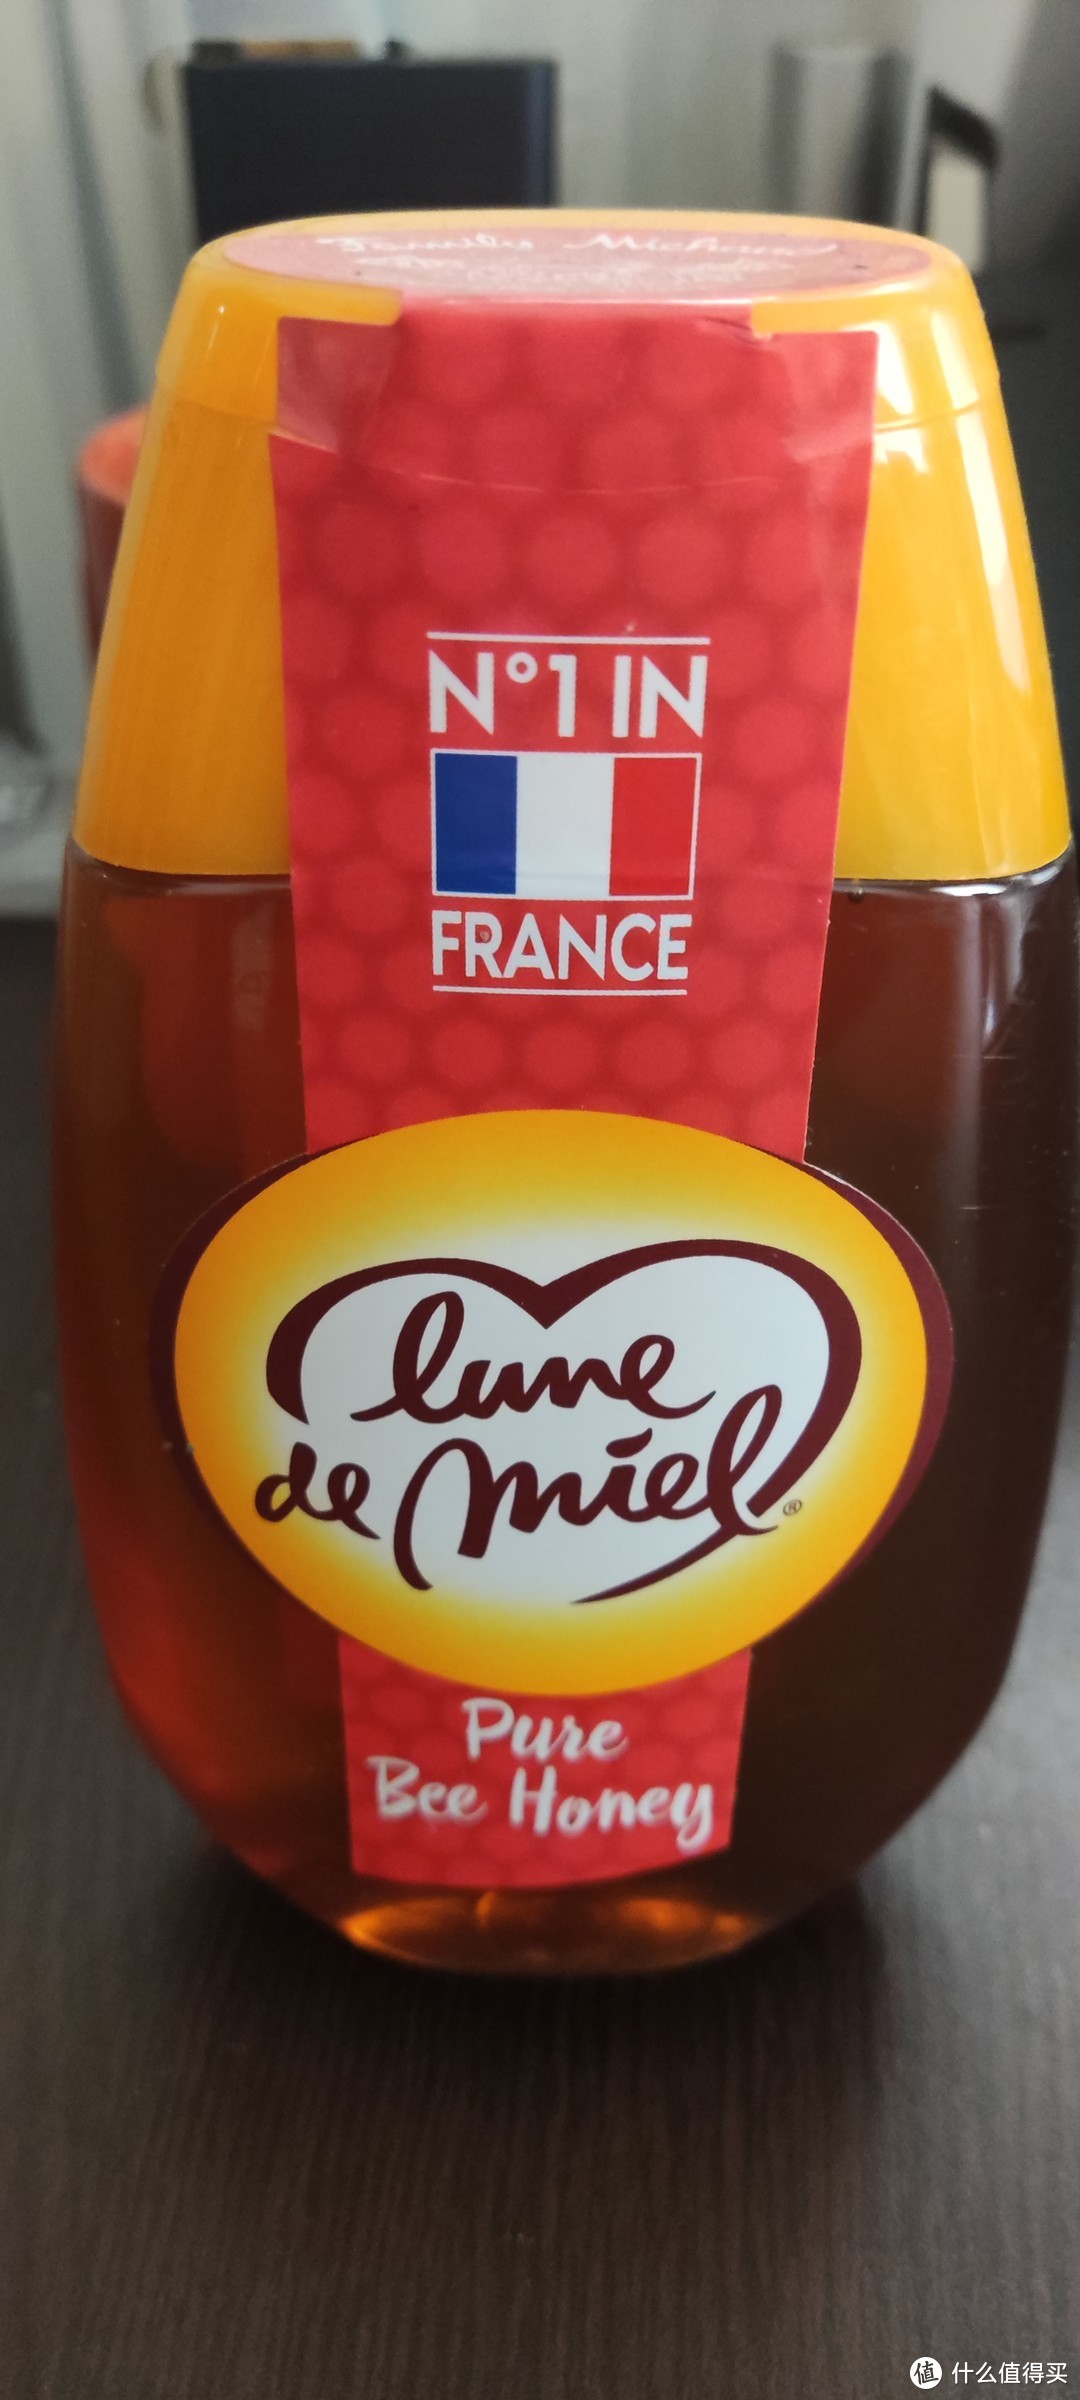 我的居家必备之一   lunedemiel法国开启蜜月纯天然土蜂蜜！